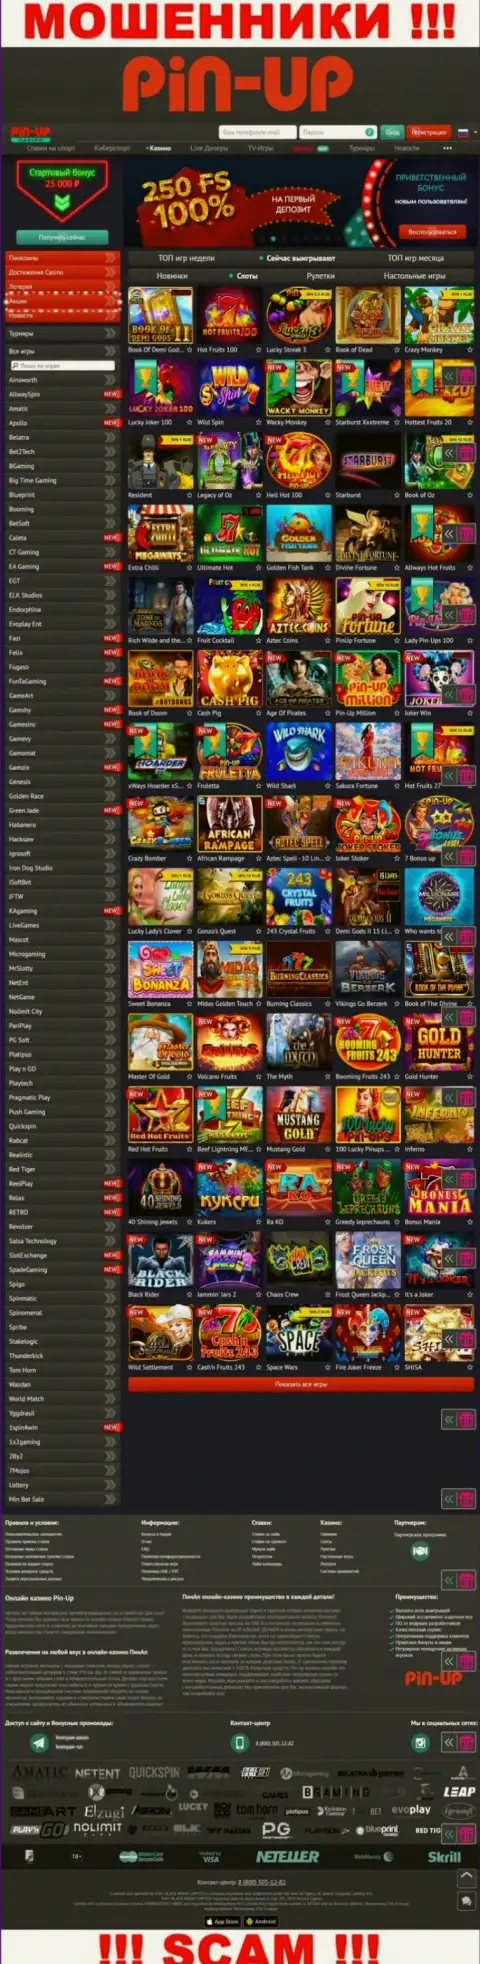 Pin-Up Casino - это официальный сайт интернет мошенников Pin Up Casino